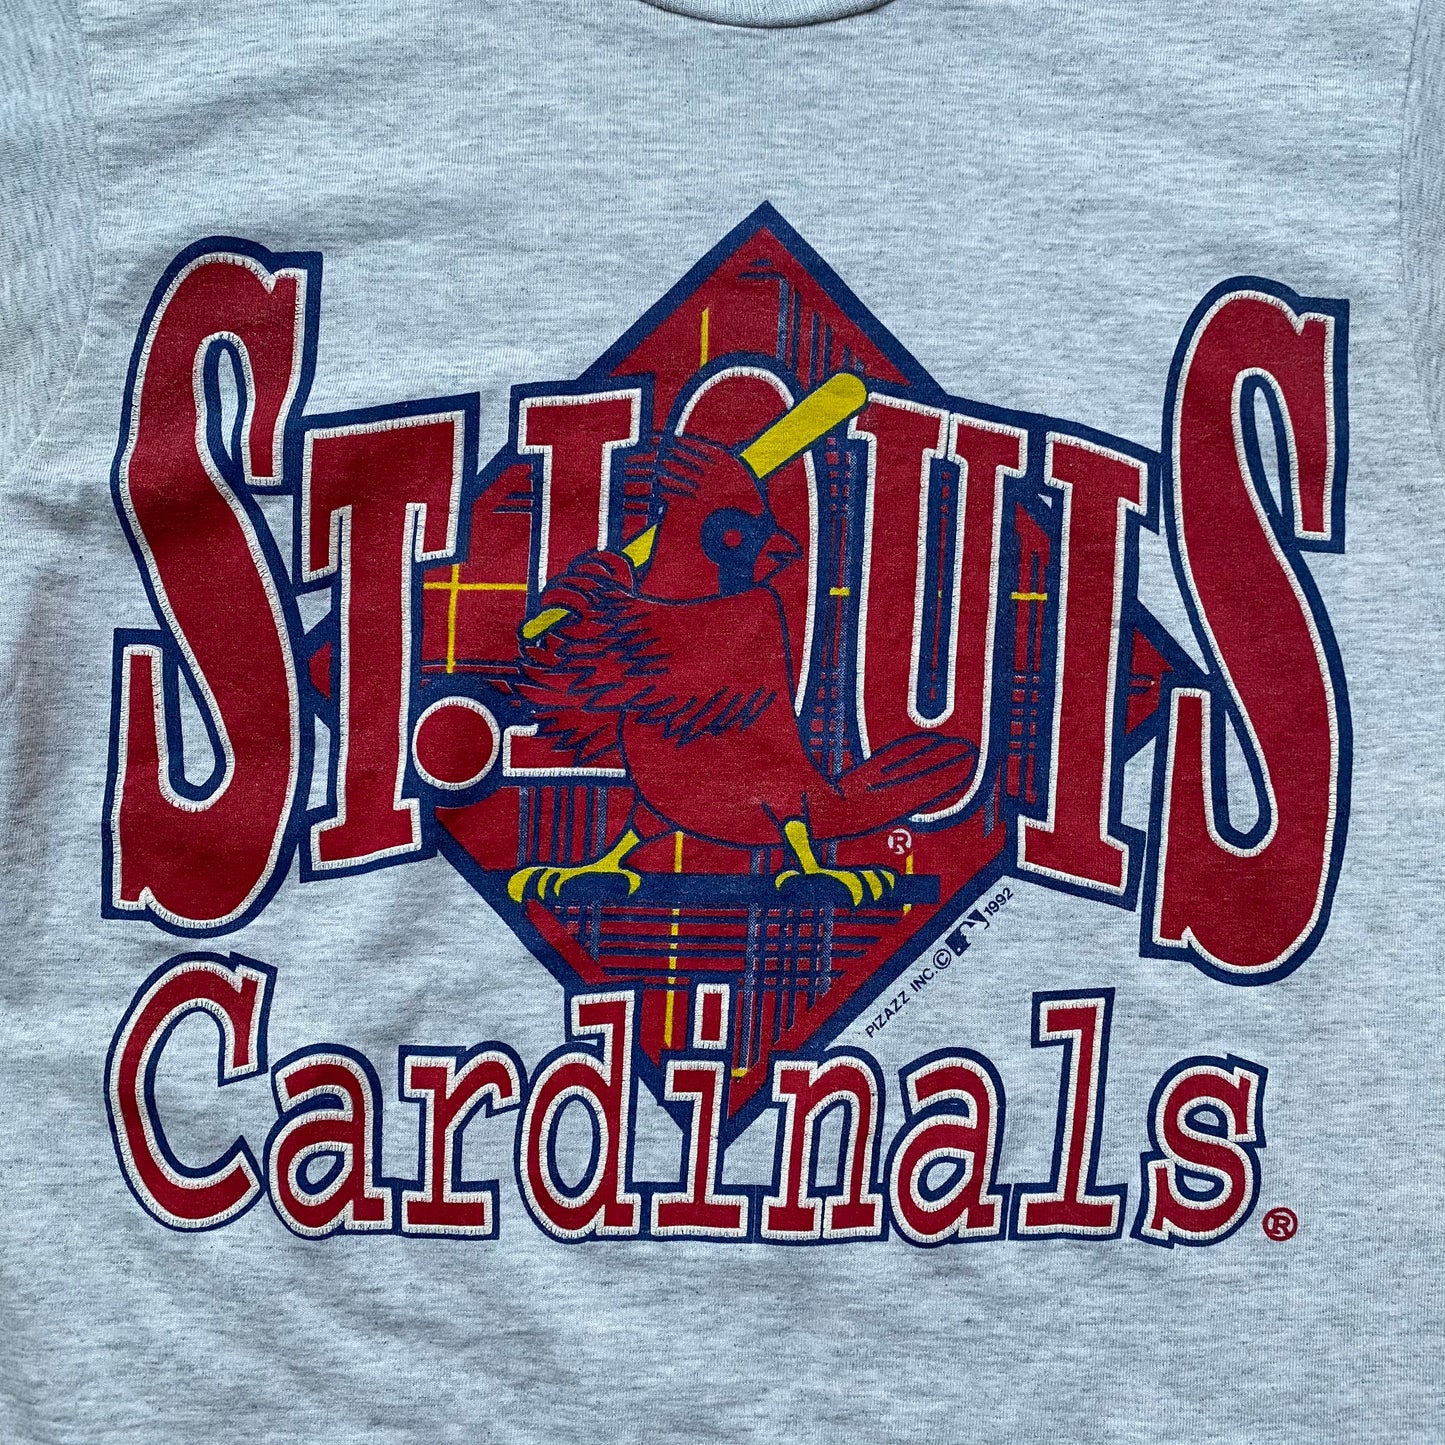 90's MLB "ST.LOUIS Cardinals" T-SHIRT